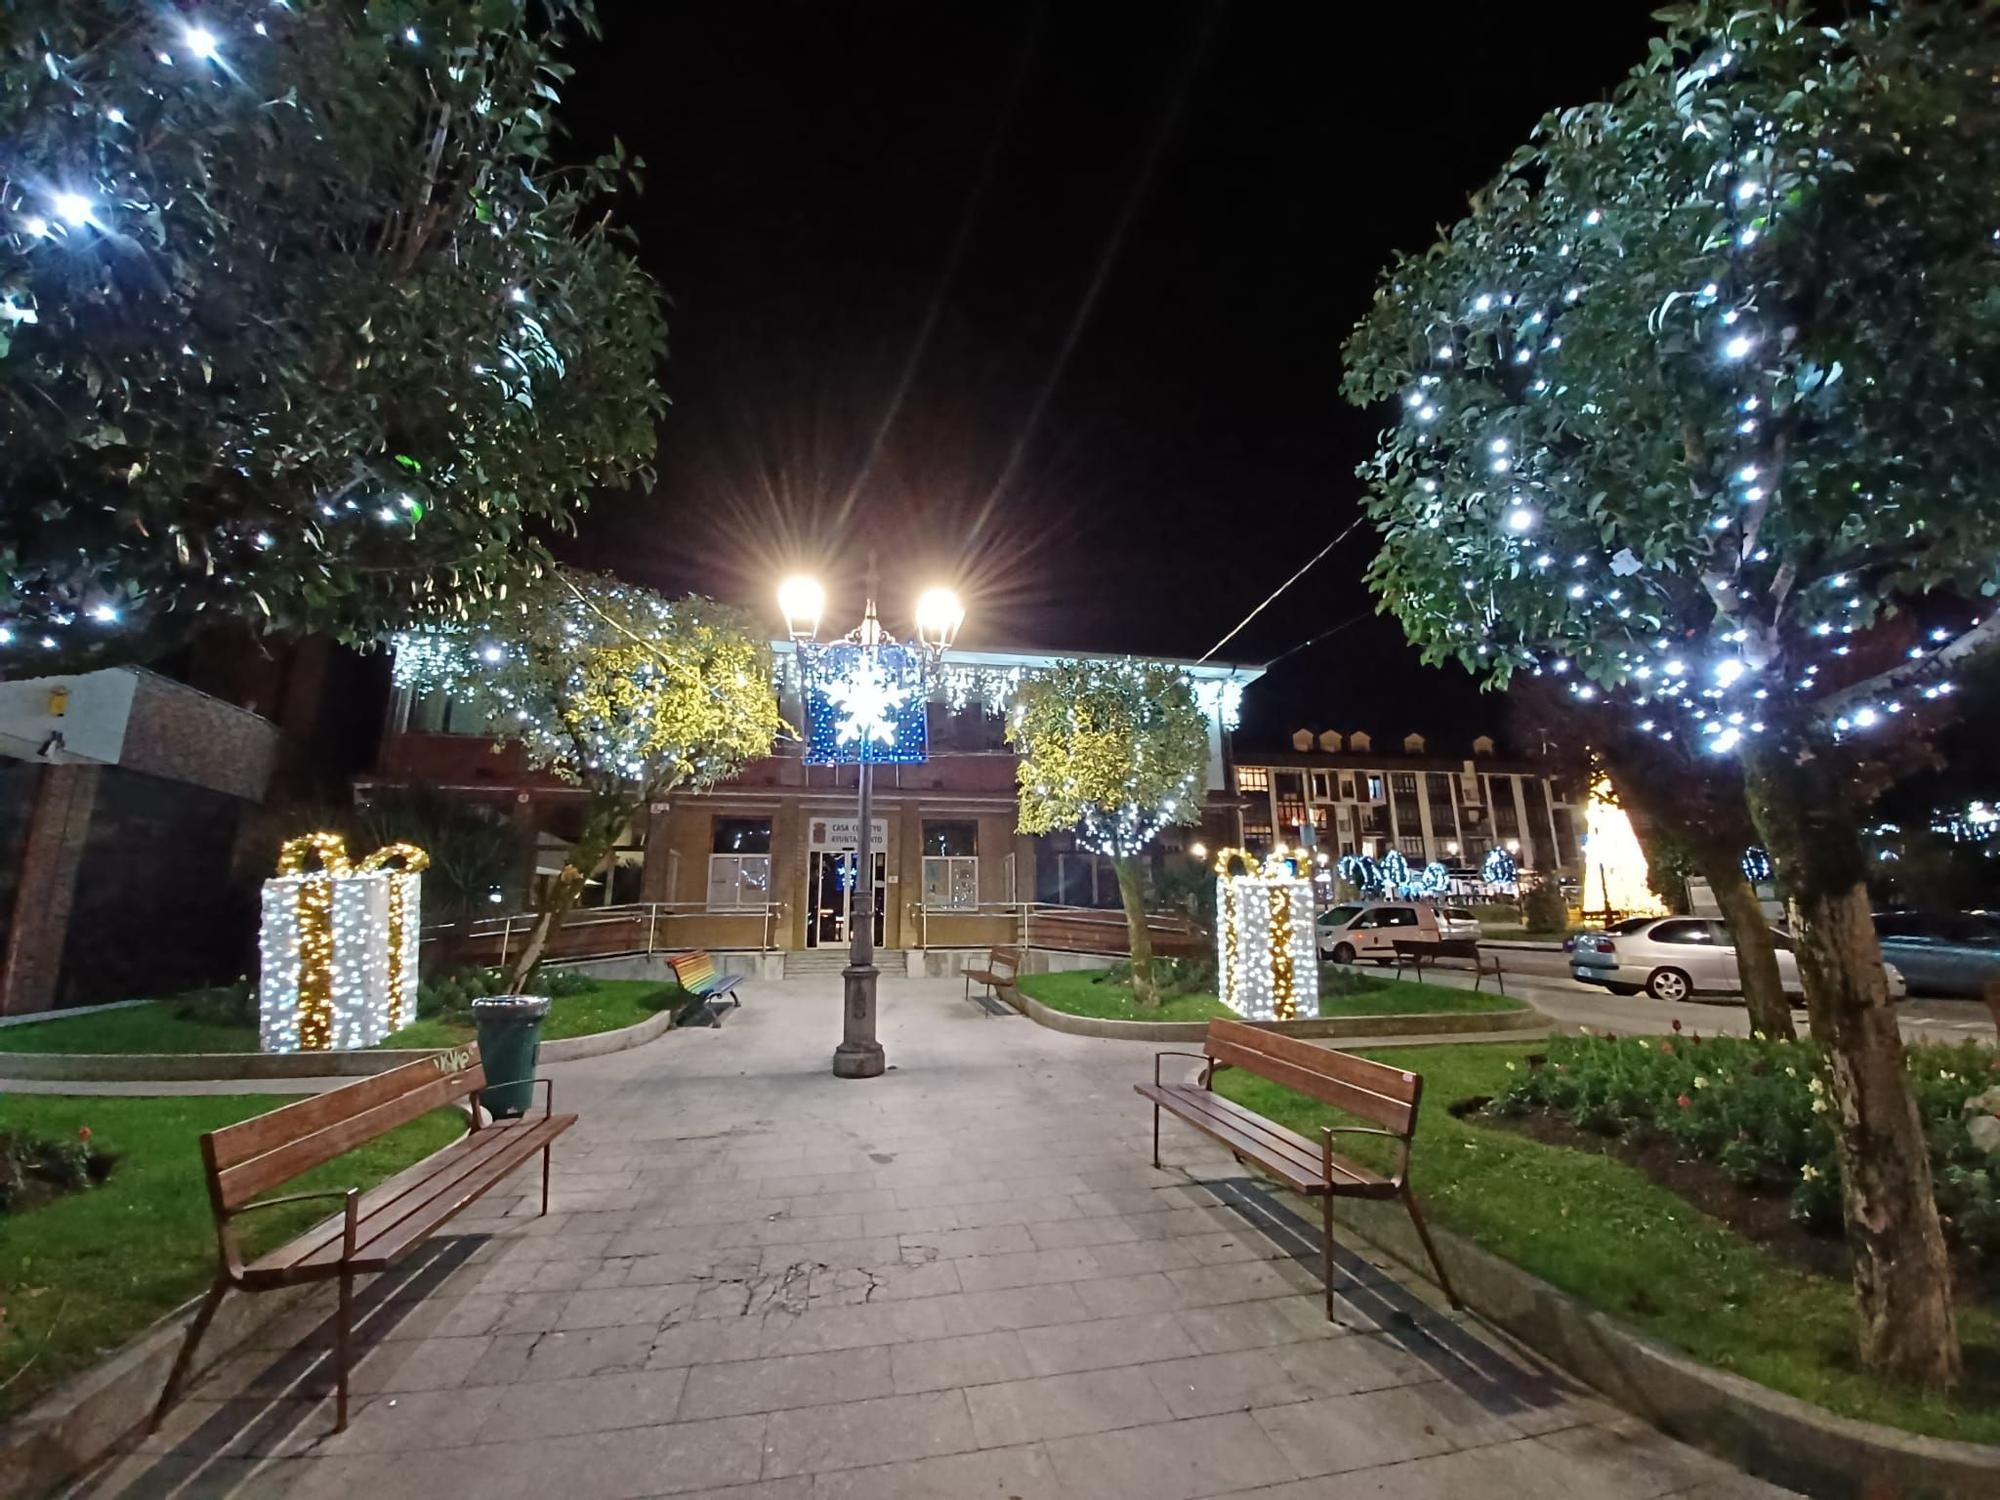 La Navidad prende en Llanera: así se ve el alumbrado navideño en las calles y plazas de Posada